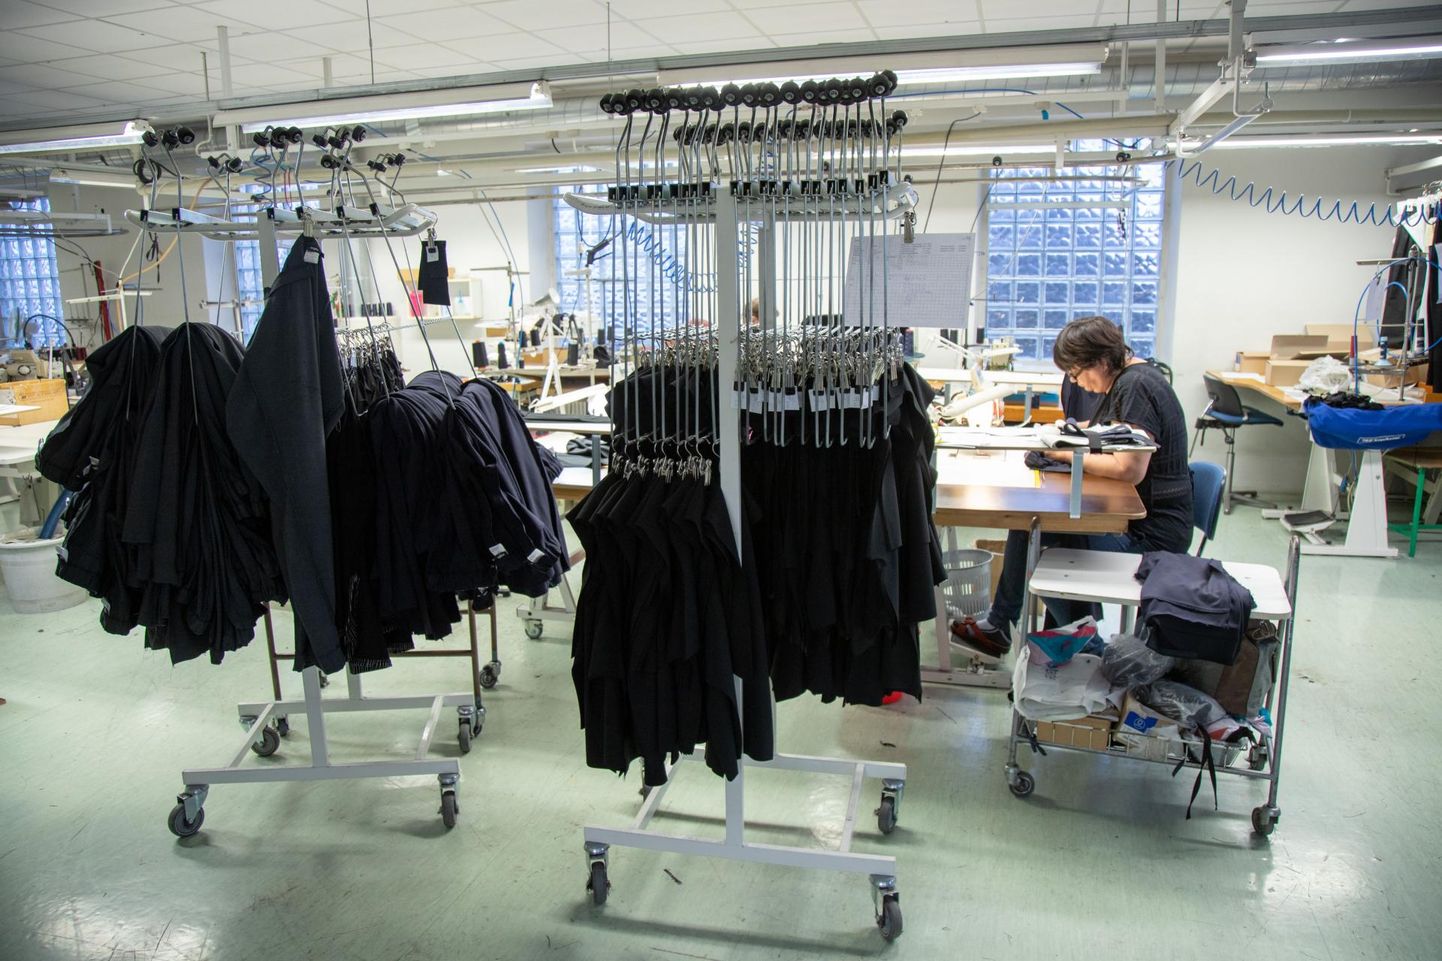 Soome turule riideid tootva firma Voglia juht Ave Treimann ütles, et praegu on keerulised ajad kõrgete tootmis- ja tööjõukulude tõttu.